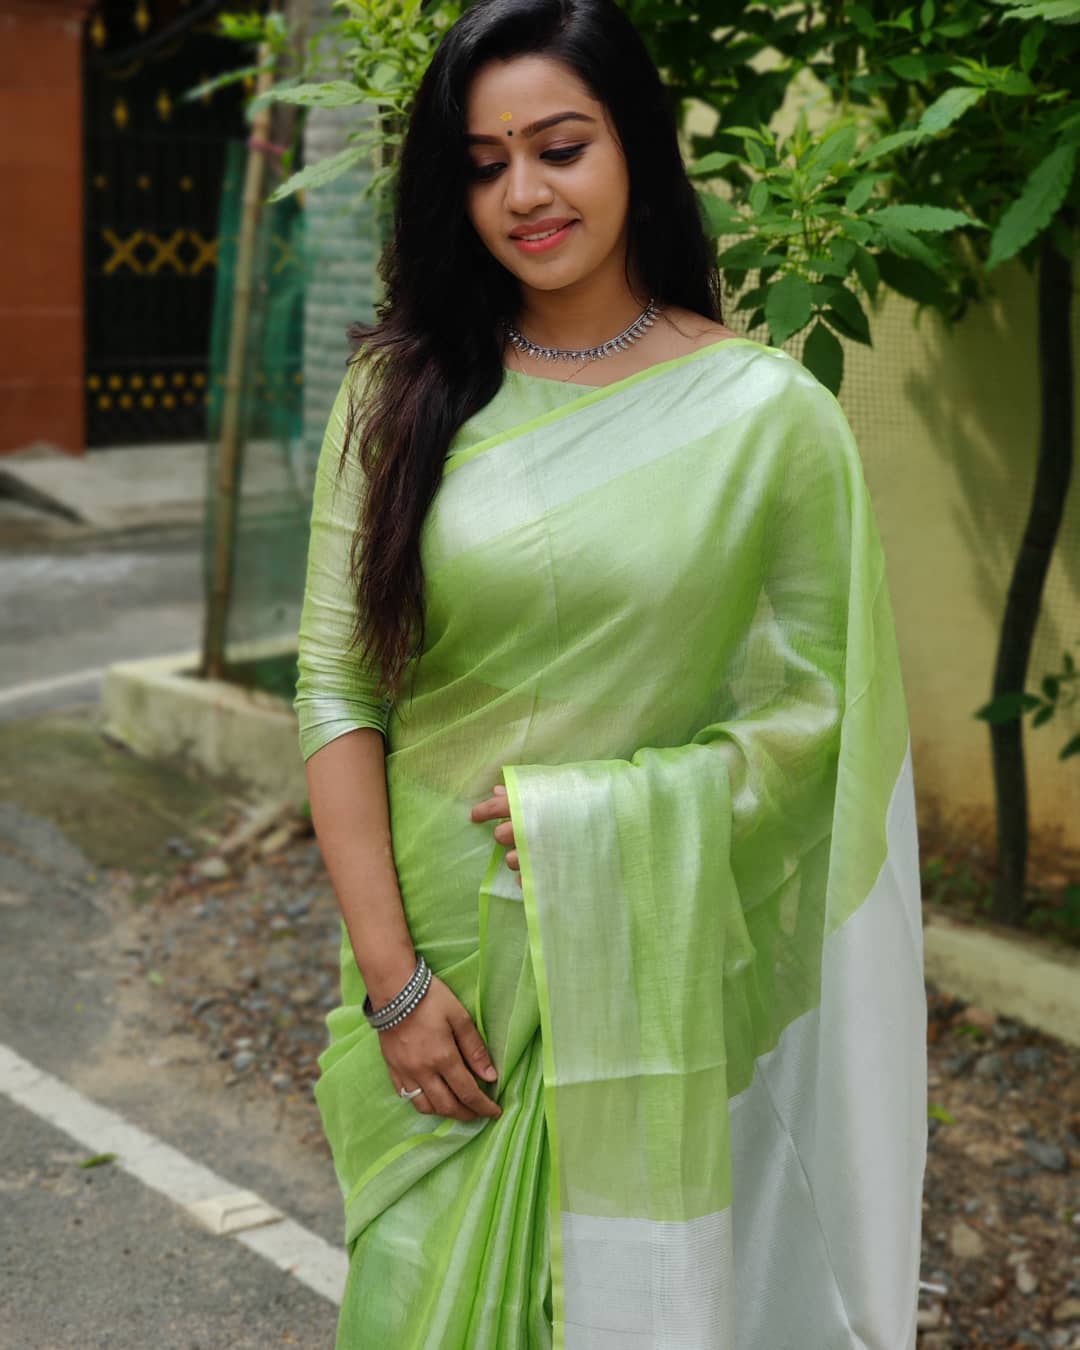 Tamil Television Actress Gayathri Yuvraaj Photos South Indian Actress